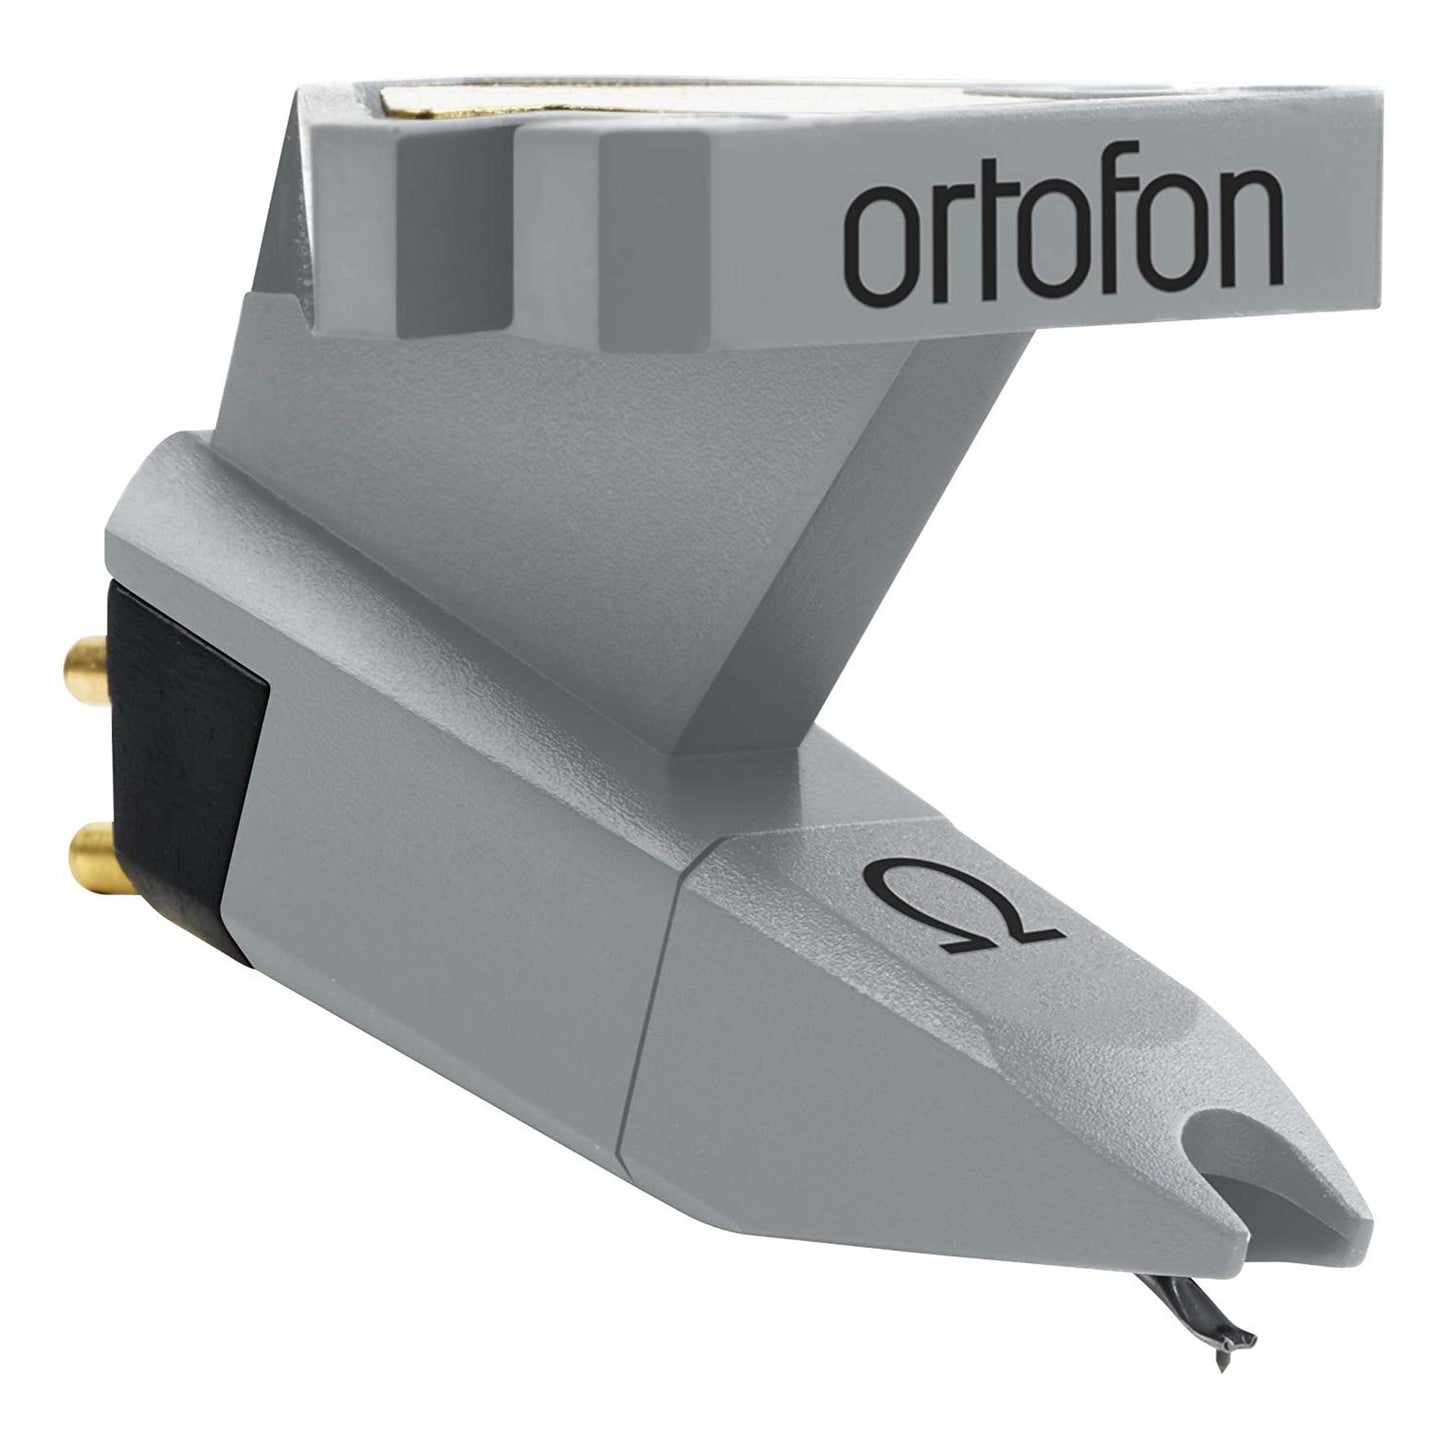 Ortofon Omega Elliptical Headshell Mounted Cartridge with Stylus